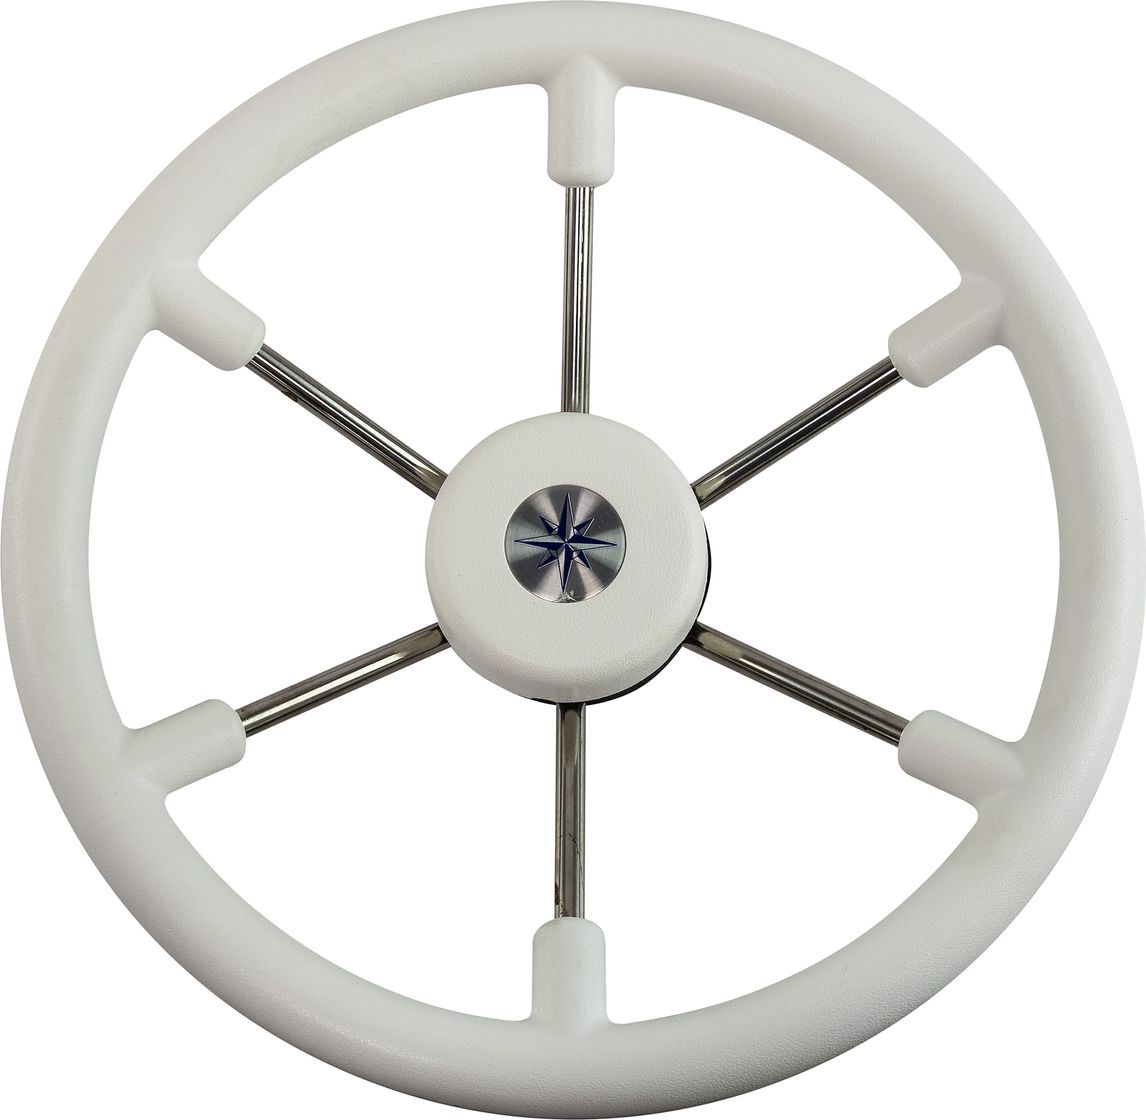 Рулевое колесо LEADER TANEGUM белый обод серебряные спицы д. 360 мм VN7360-08 рулевое колесо evolution белый обод с карбоновыми вставками more 10016468